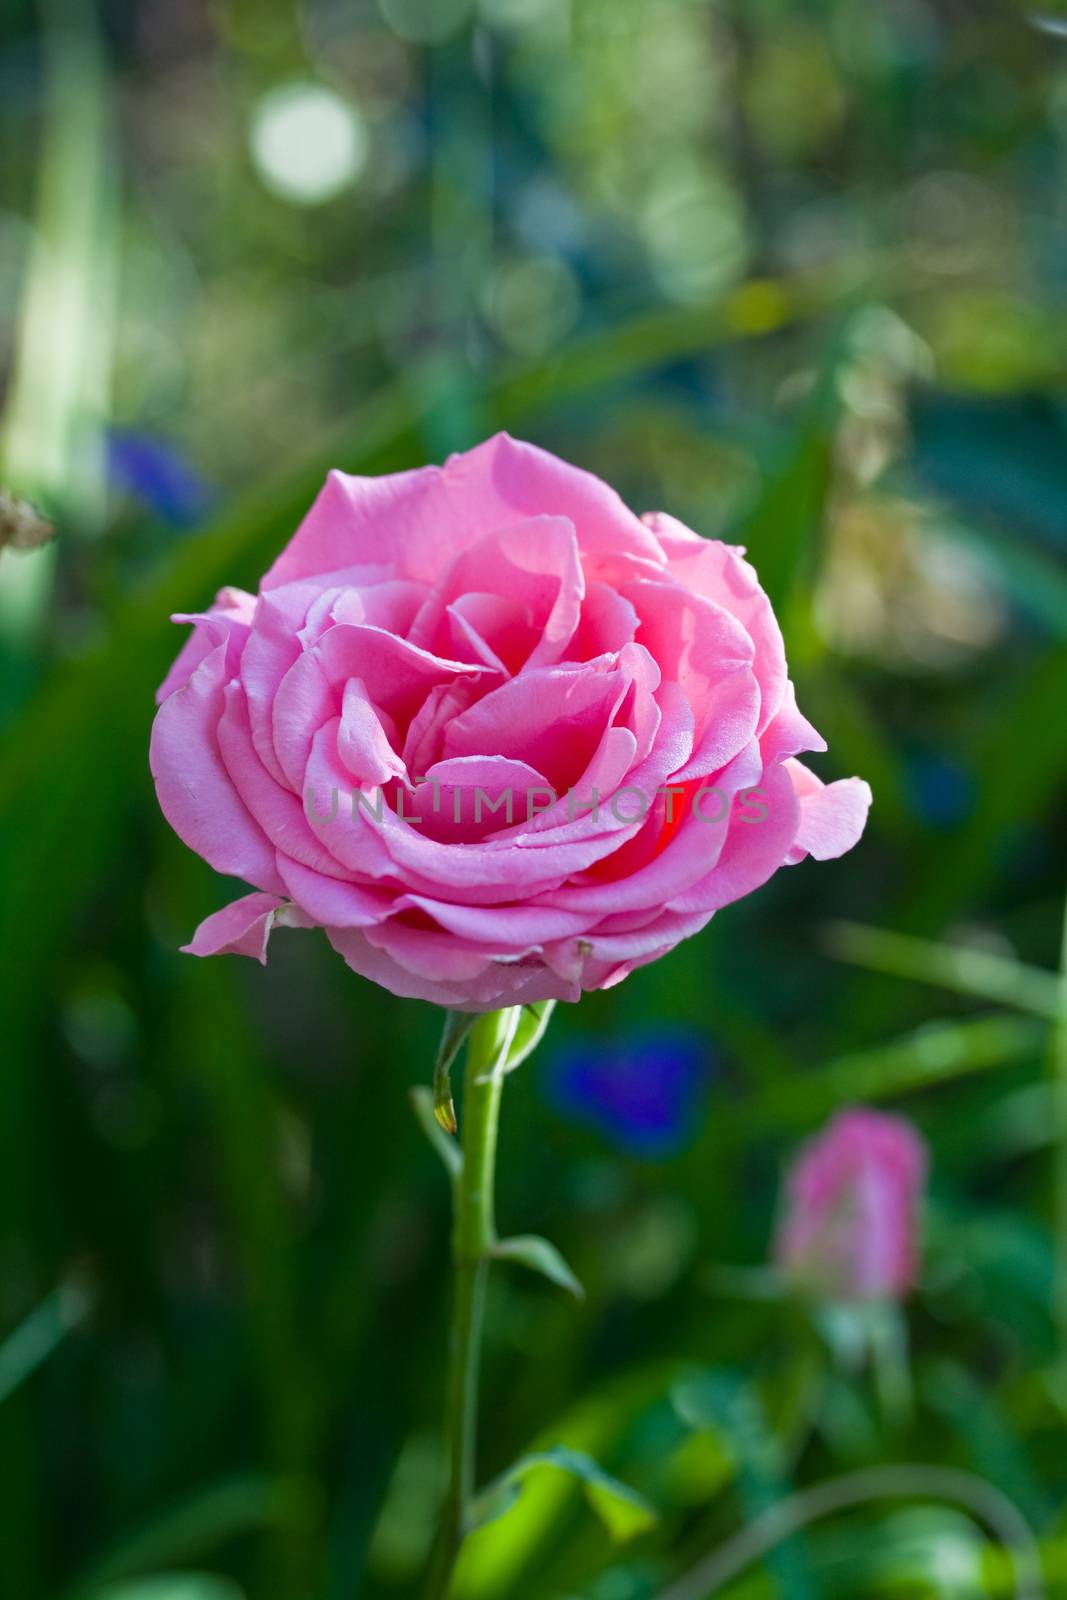 Flower Rose in garden by Irina1977